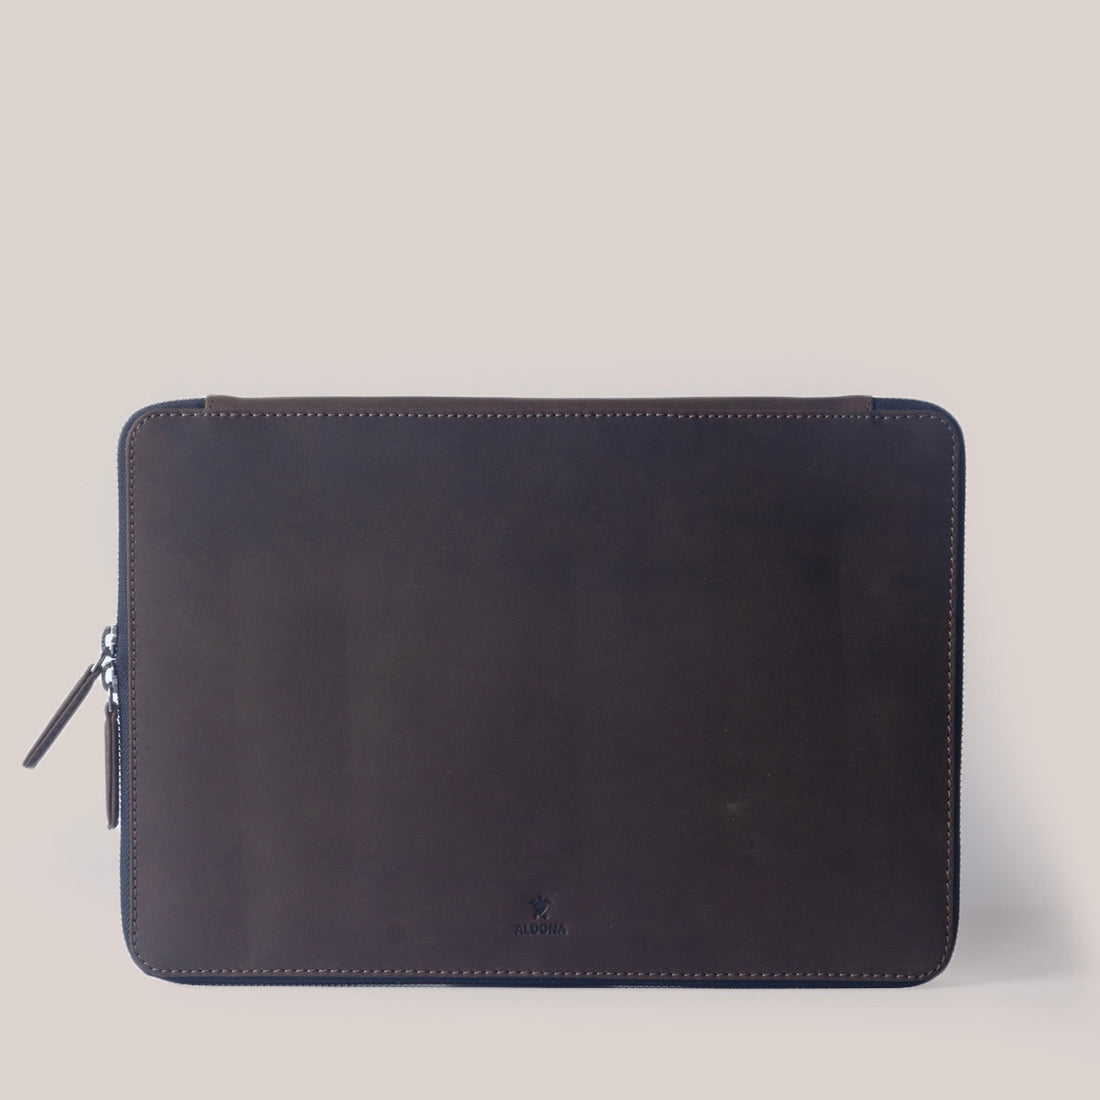 DELL XPS 17 Zippered Laptop Case - Cognac